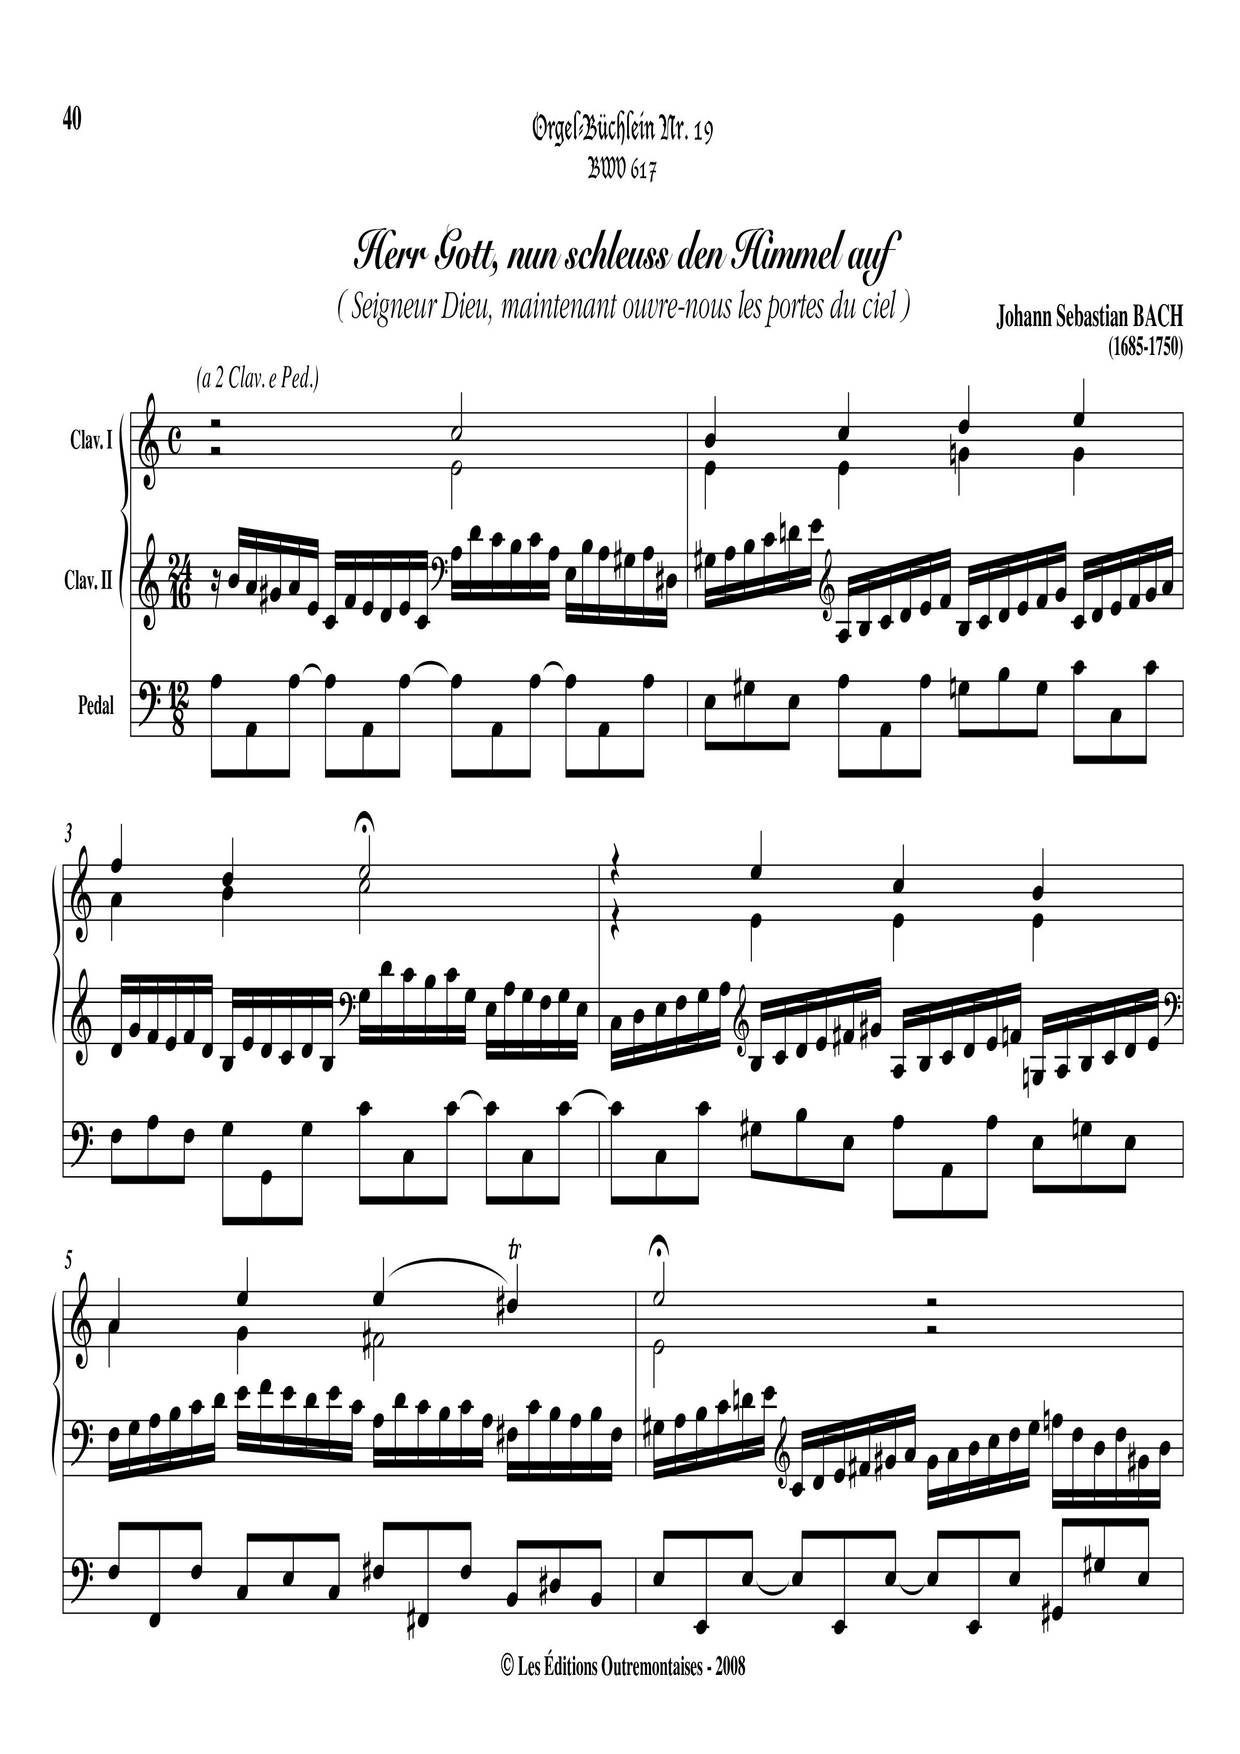 Chorale Prelude 'Herr Gott Nun Schleuss Den Himmel Auf', BWV 617琴譜